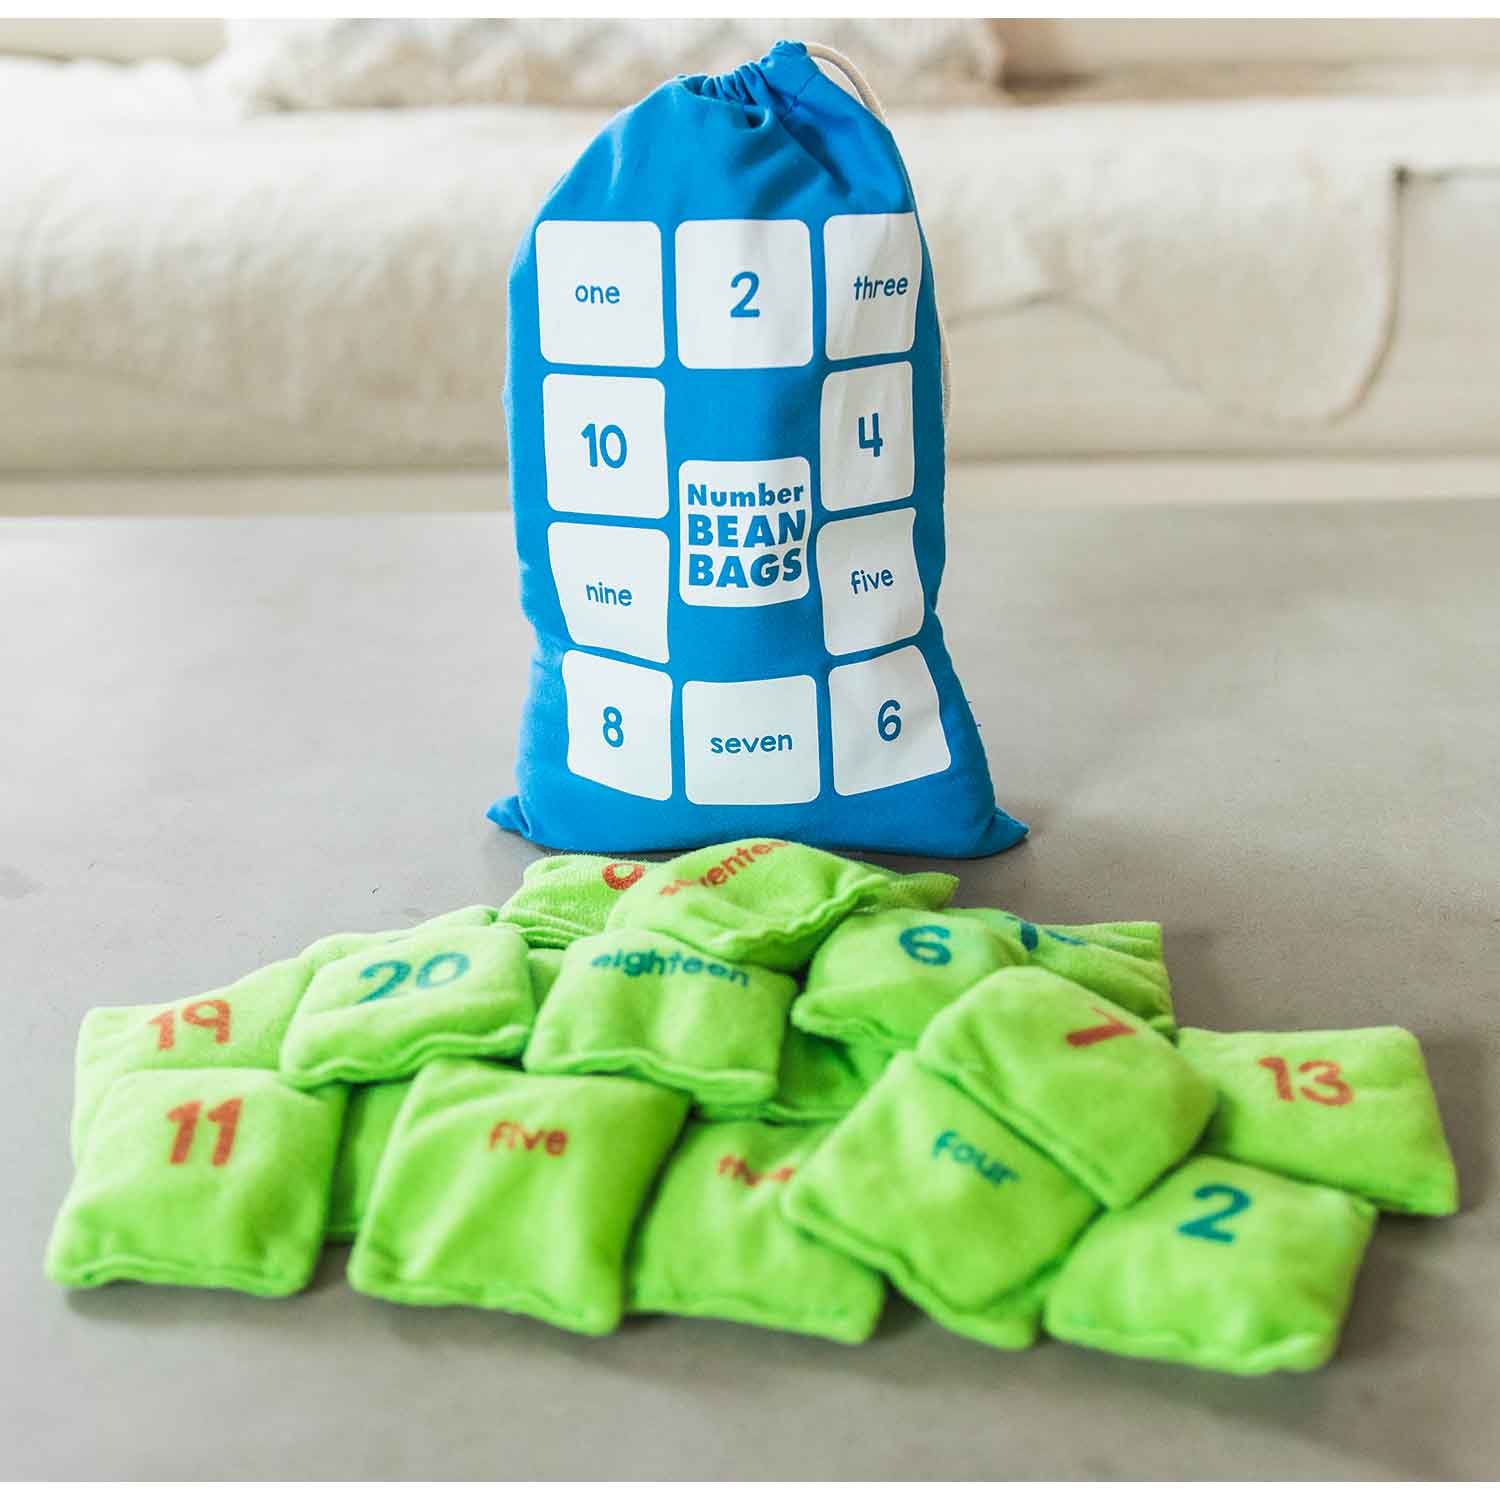 Number Bean Bags | Becker's School Supplies